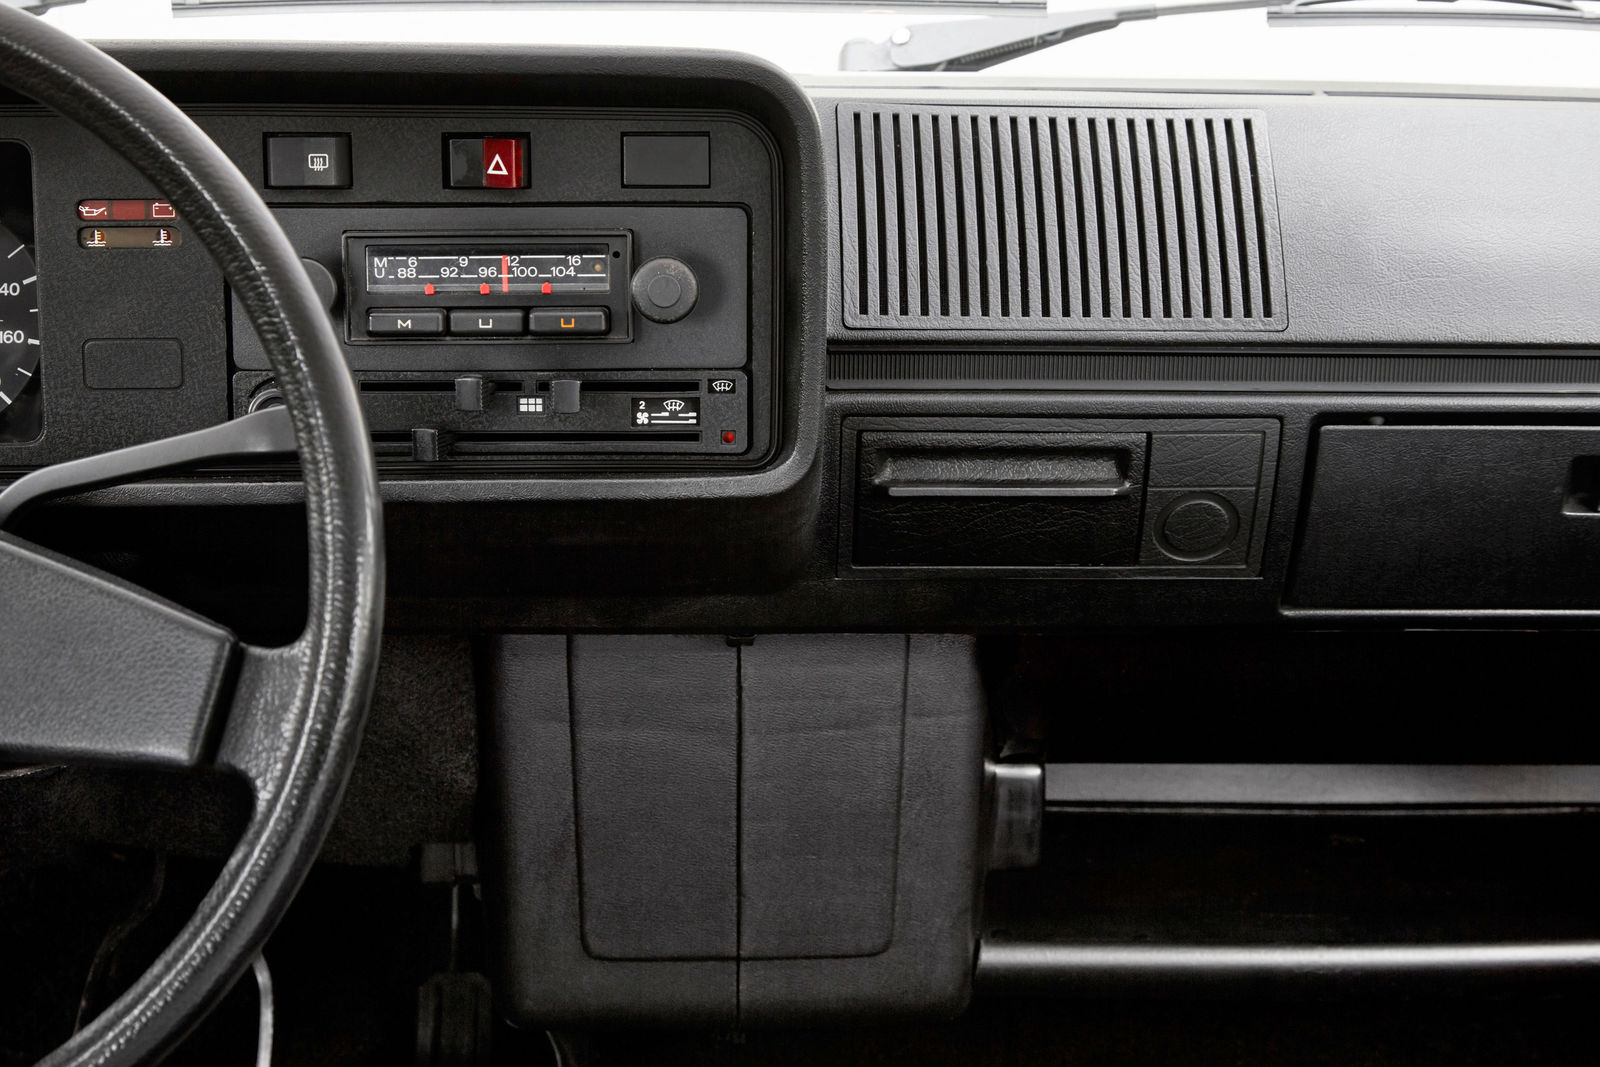 VW Golf IV - Car & Audio GmbH